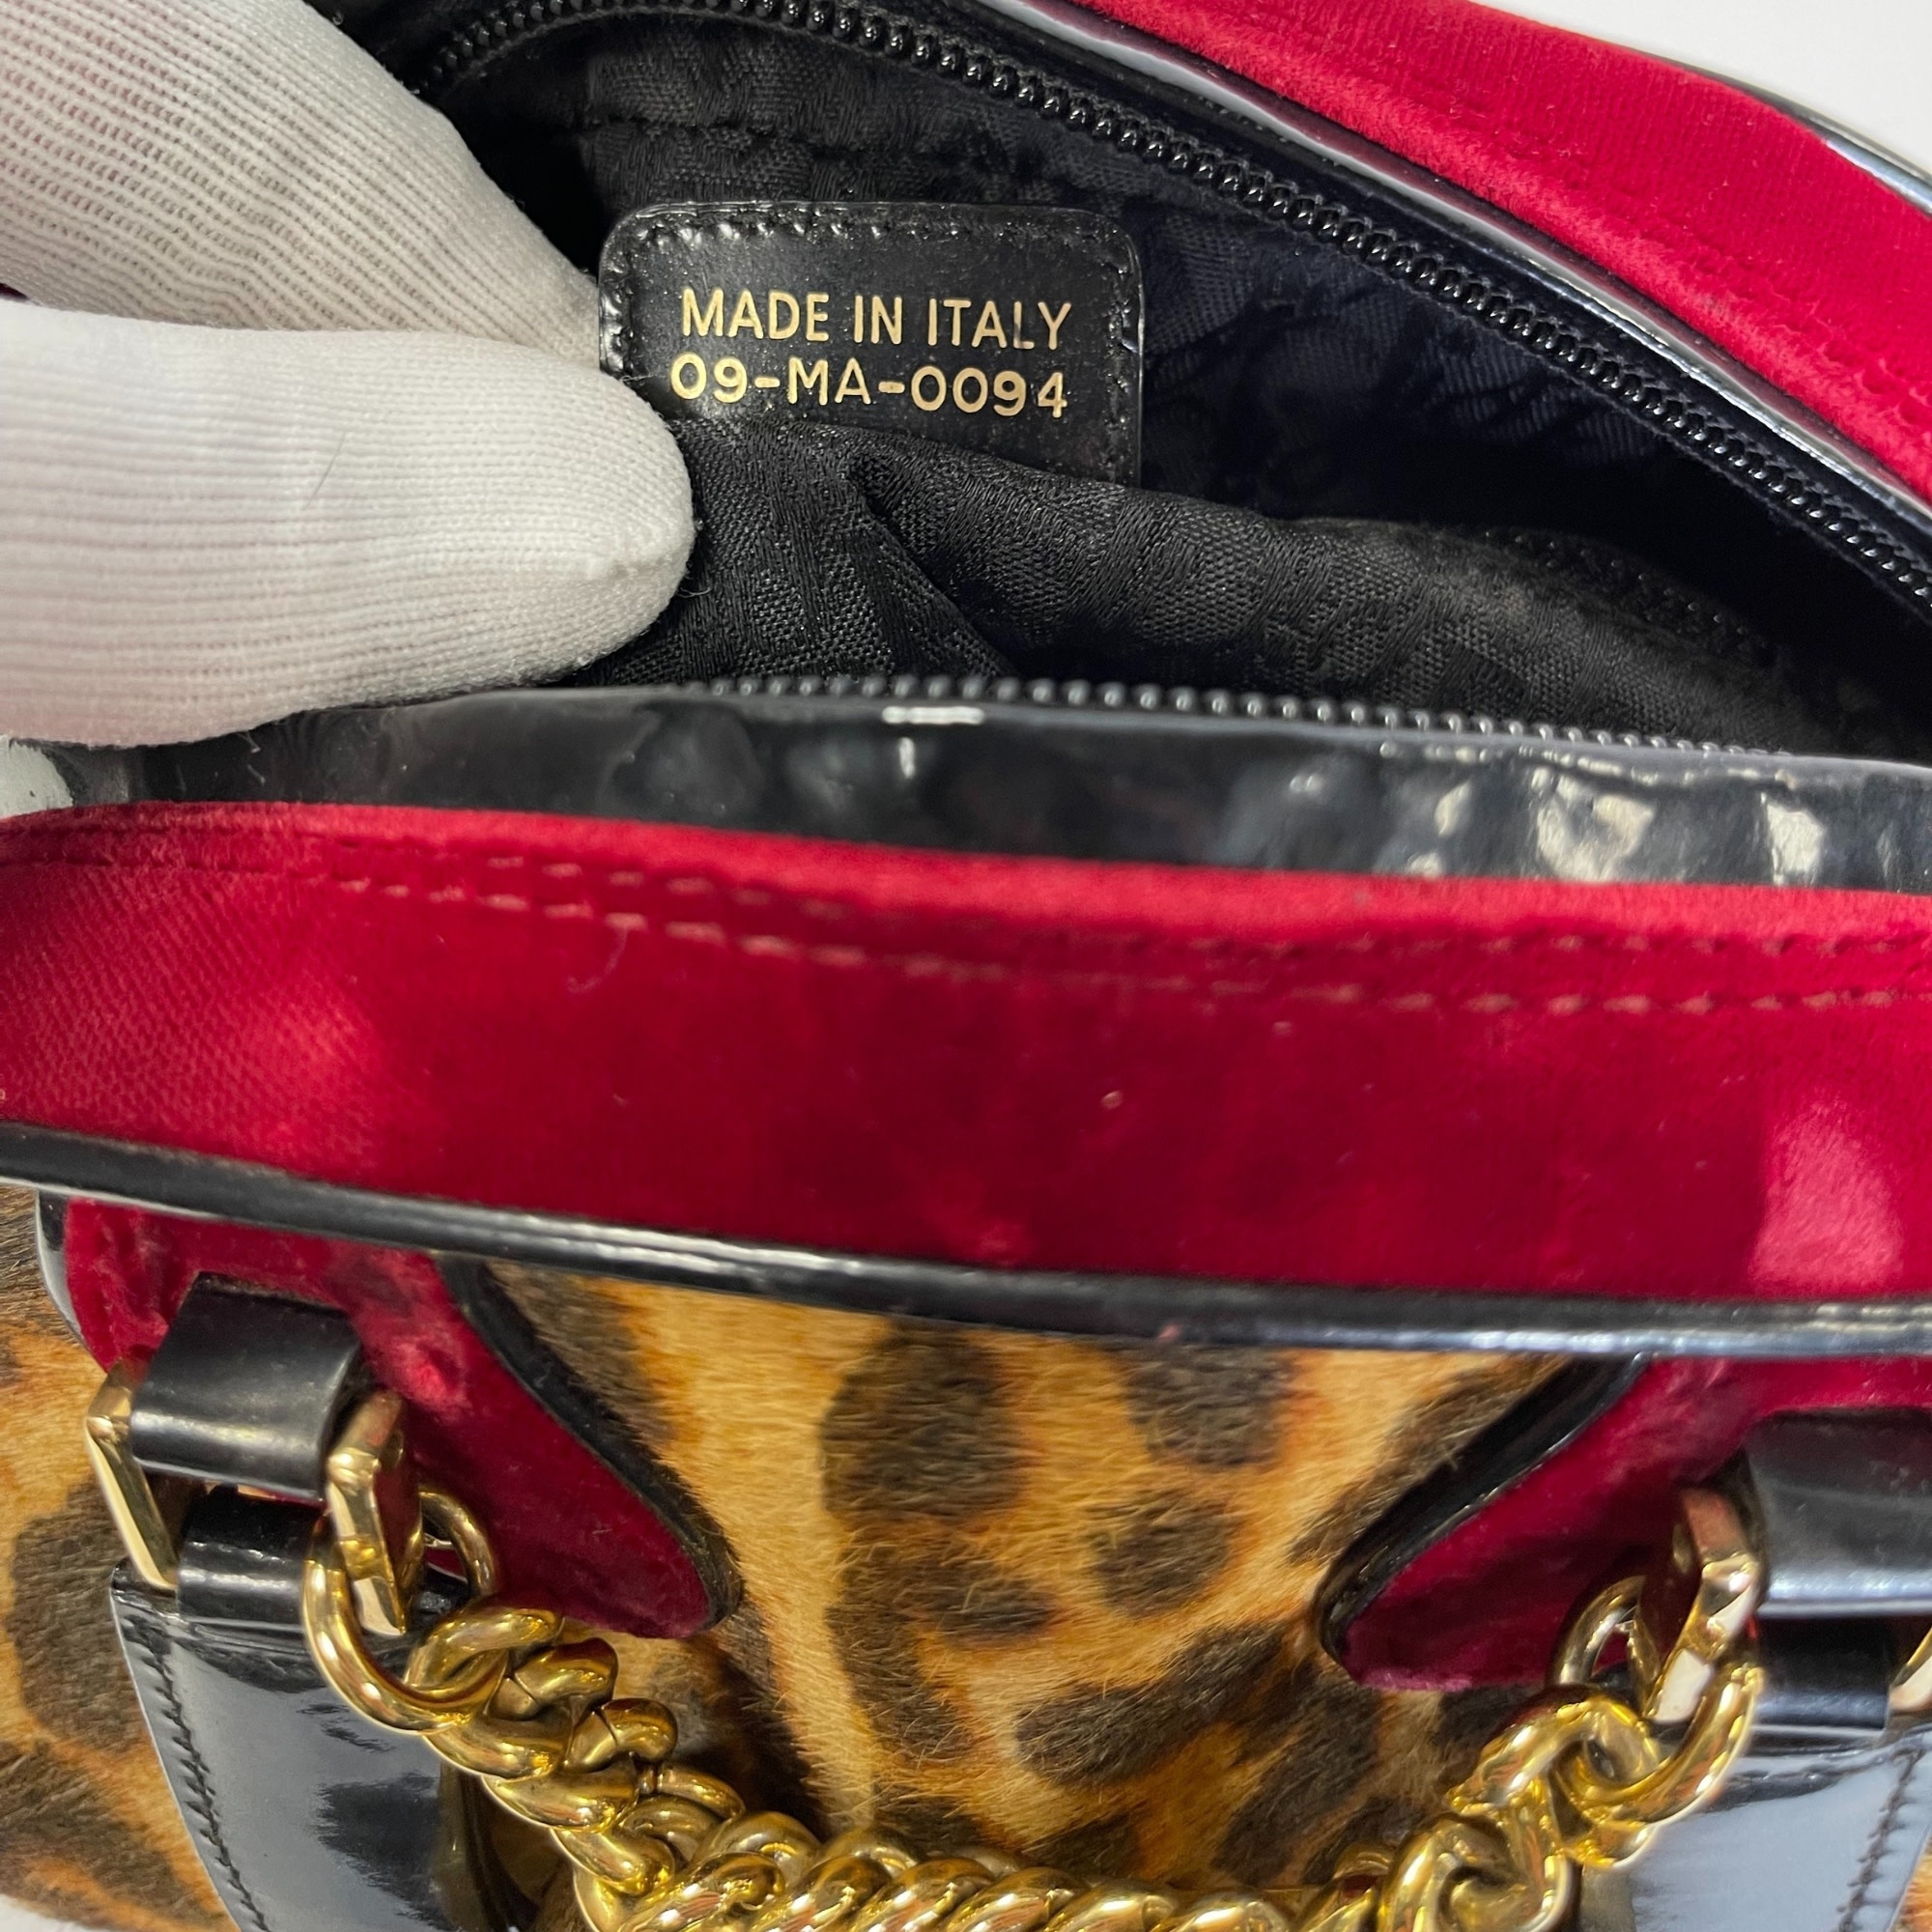 Christian Dior Vintage Gambler Dice Bowler Bag - Brown Handle Bags, Handbags  - CHR353586